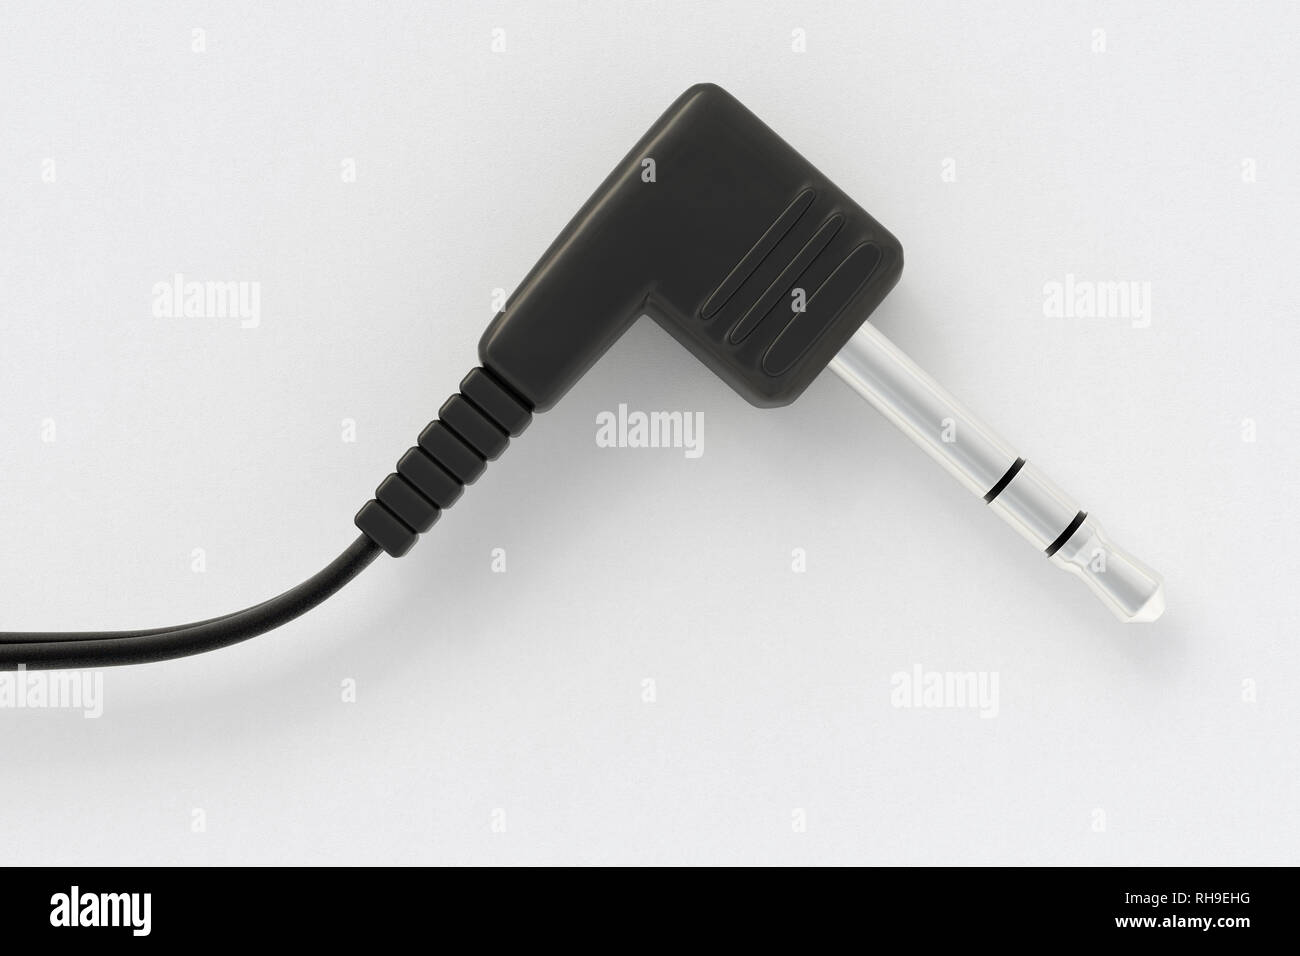 Headphone audio jack 3.5 mm on white background Stock Photo